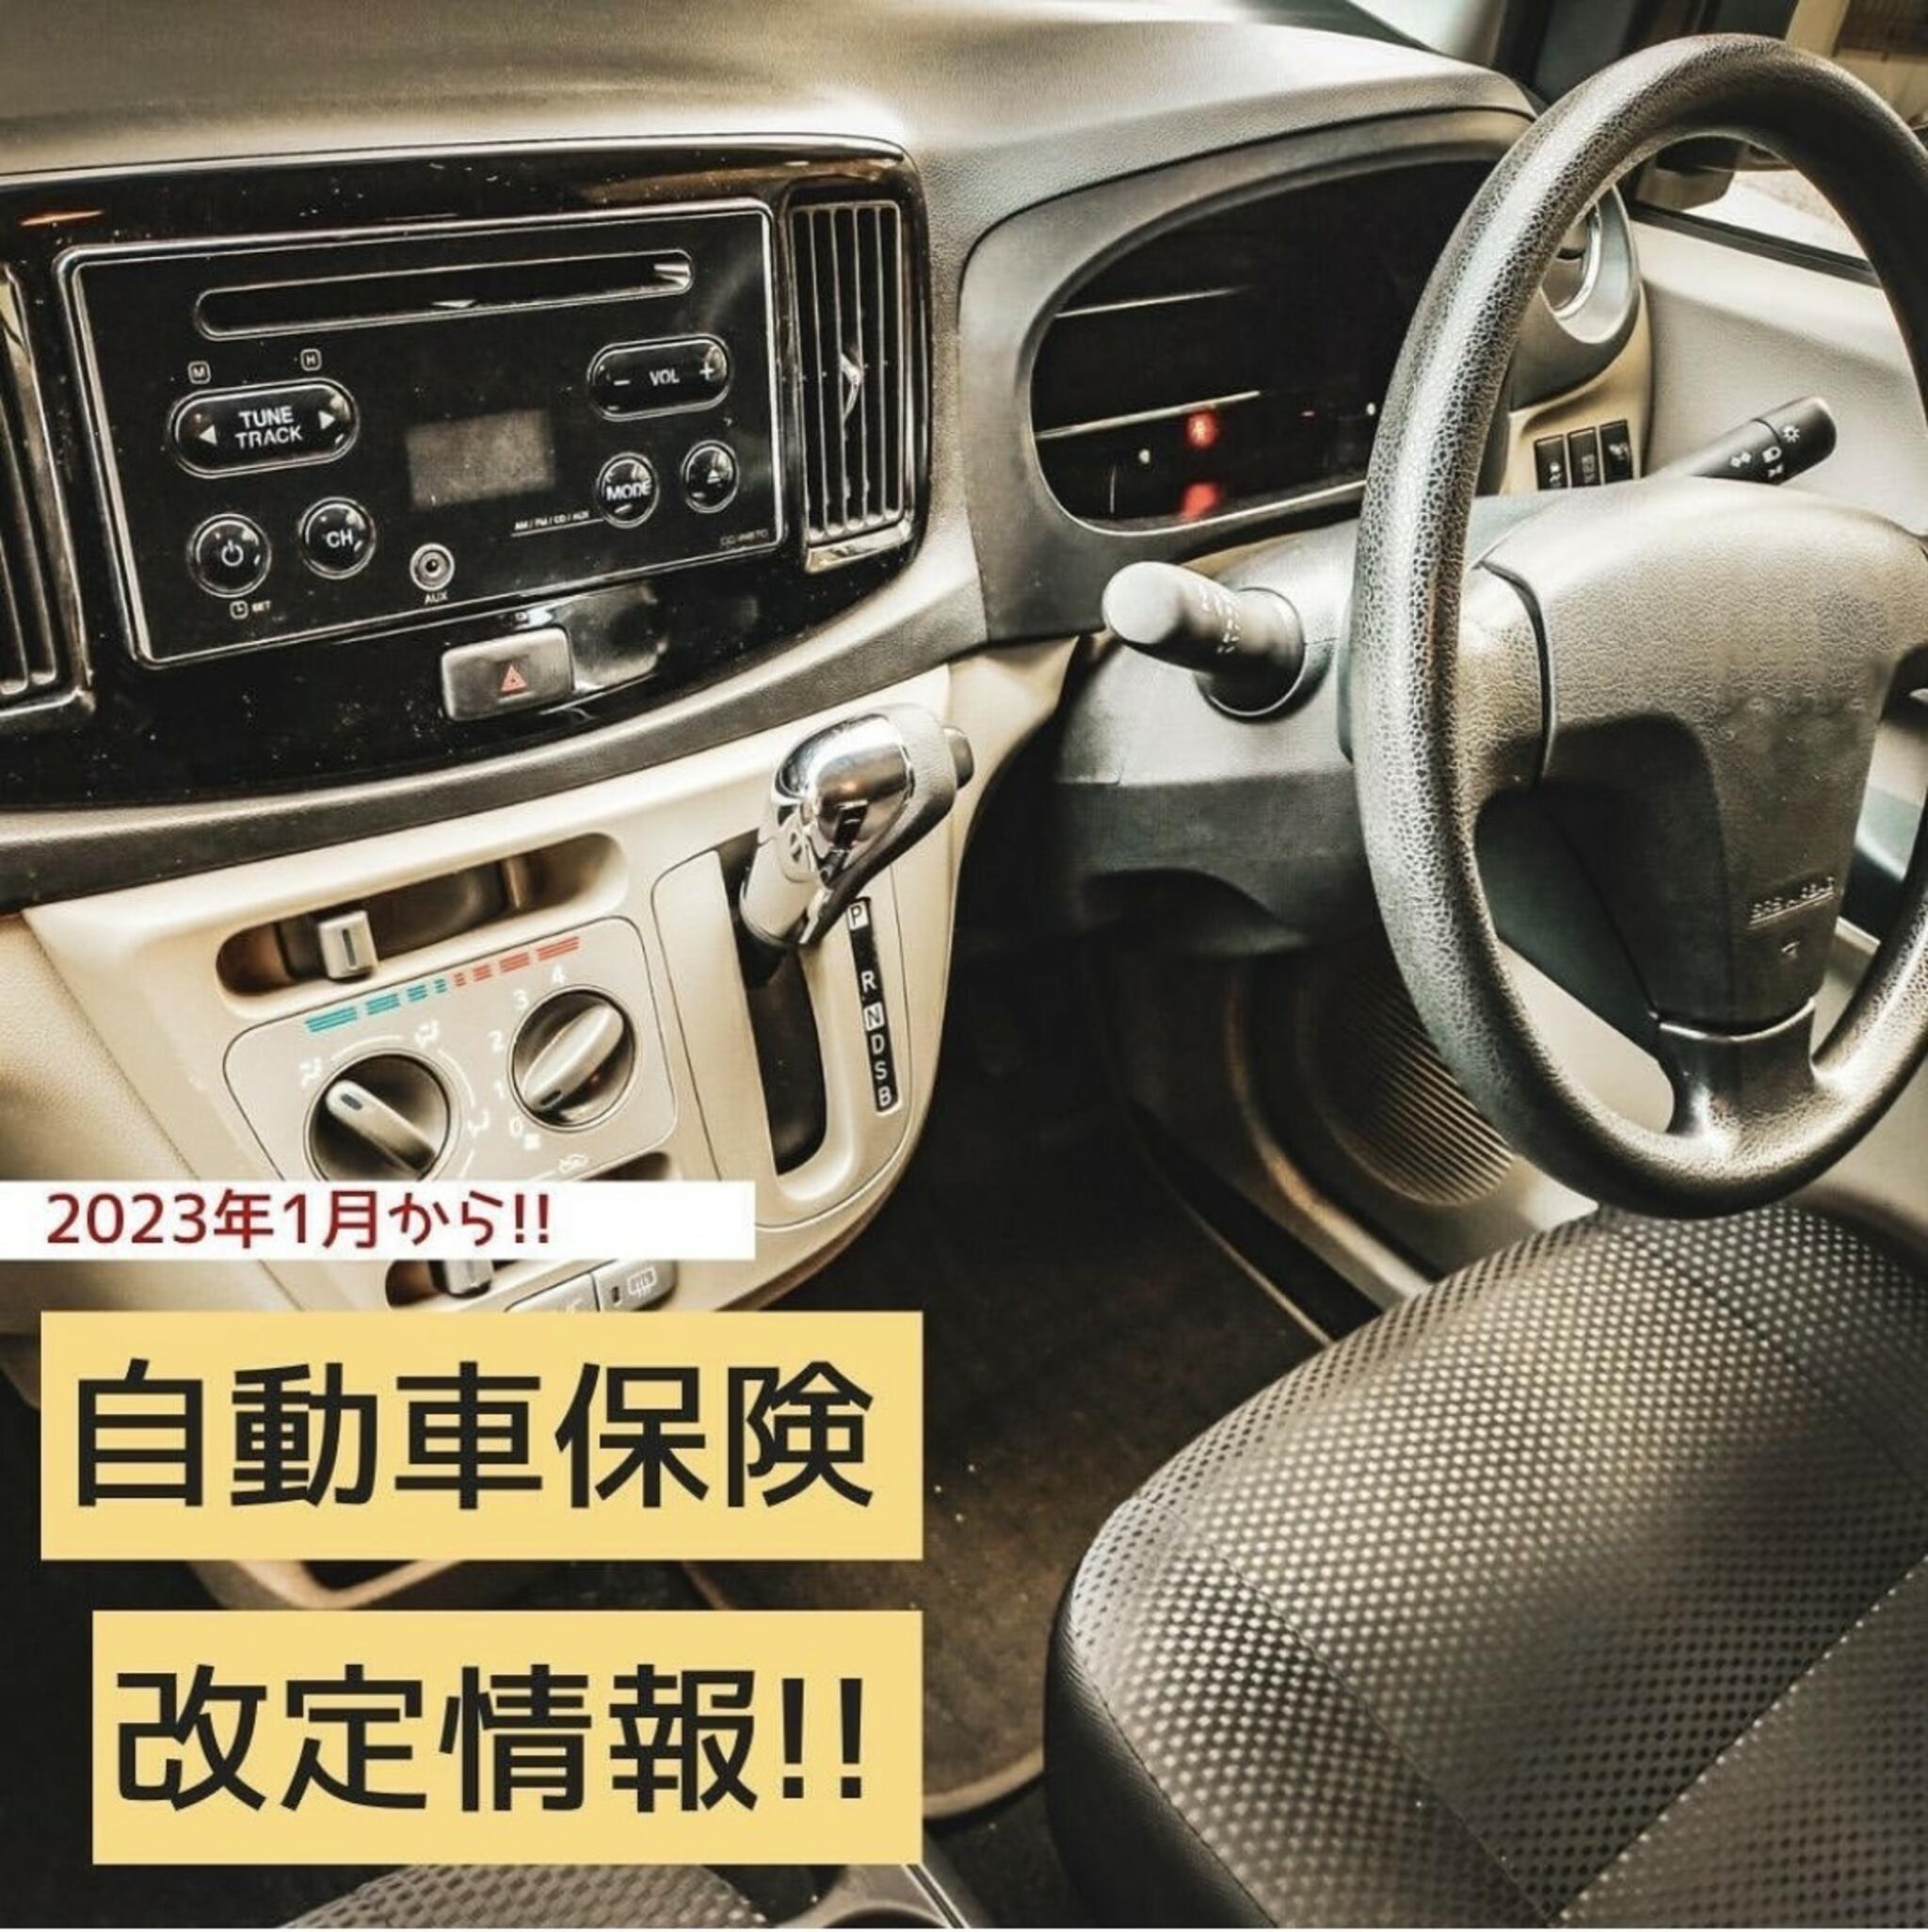 くらしの保険室　イオン新潟西店からのお知らせ(2023年1月より、一部自動車保険が改定になりました！)に関する写真